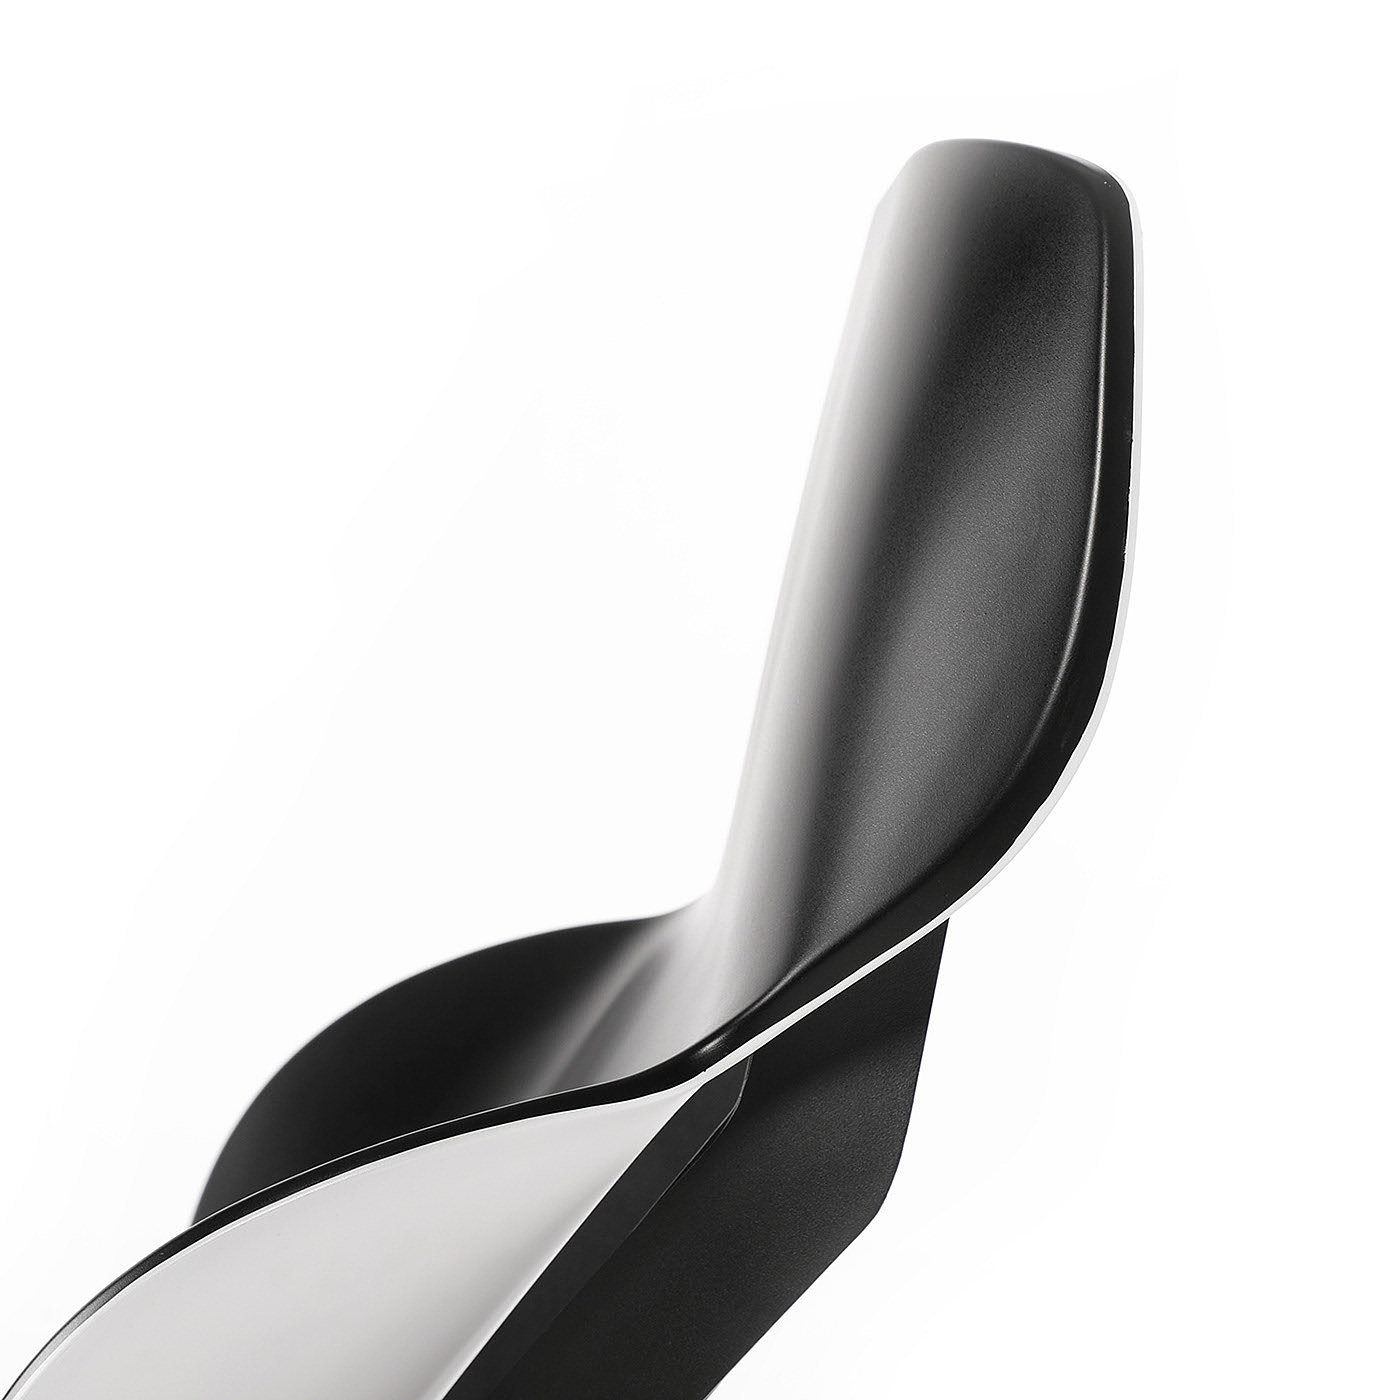 座椅，钢，塑料，极简主义，黑色，